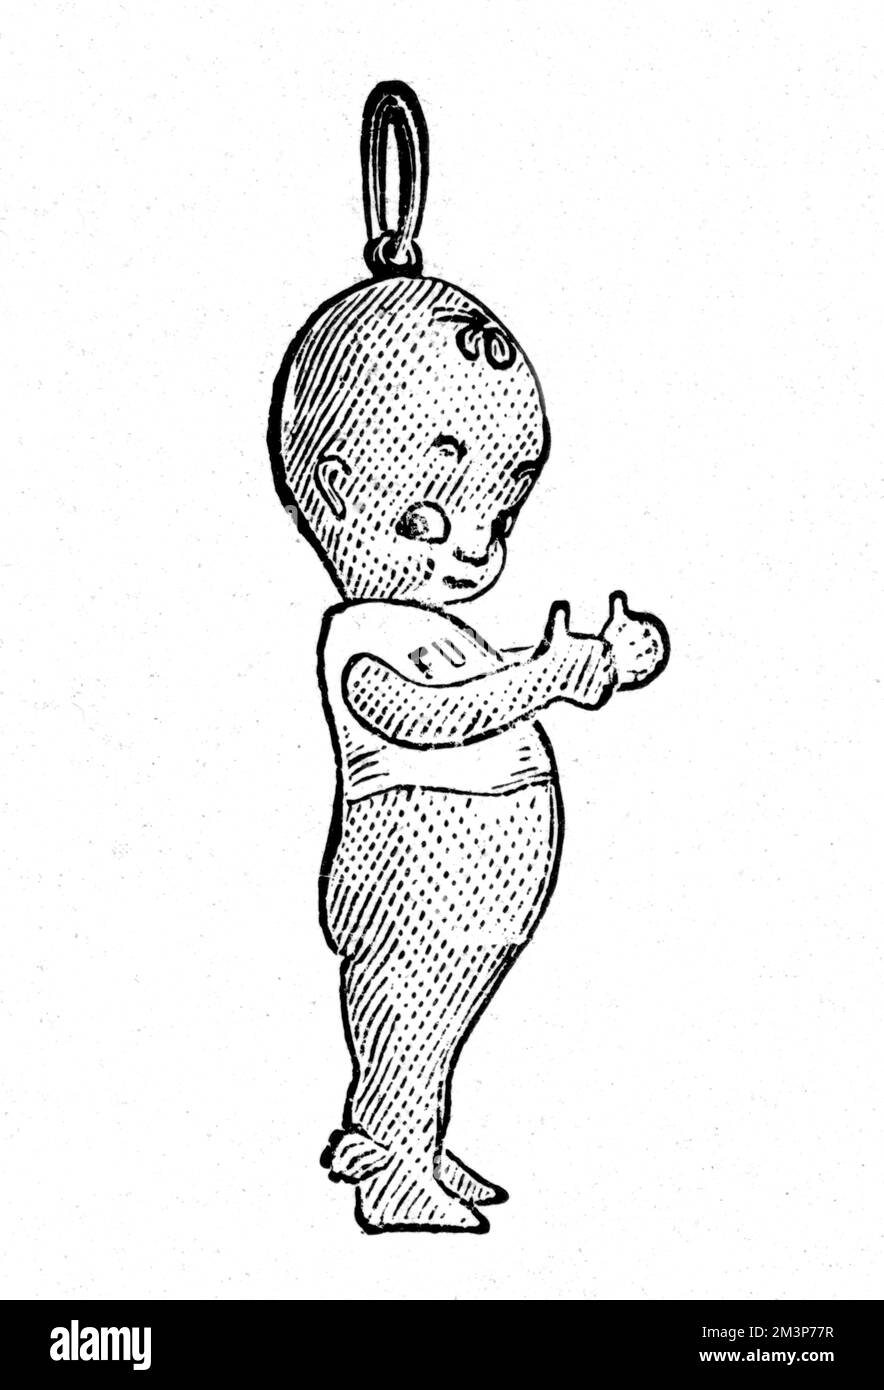 'Fum's Up', uno dei tanti ciondoli o mascotte prodotti durante la prima guerra mondiale e progettati per portare Buona fortuna. Foto Stock